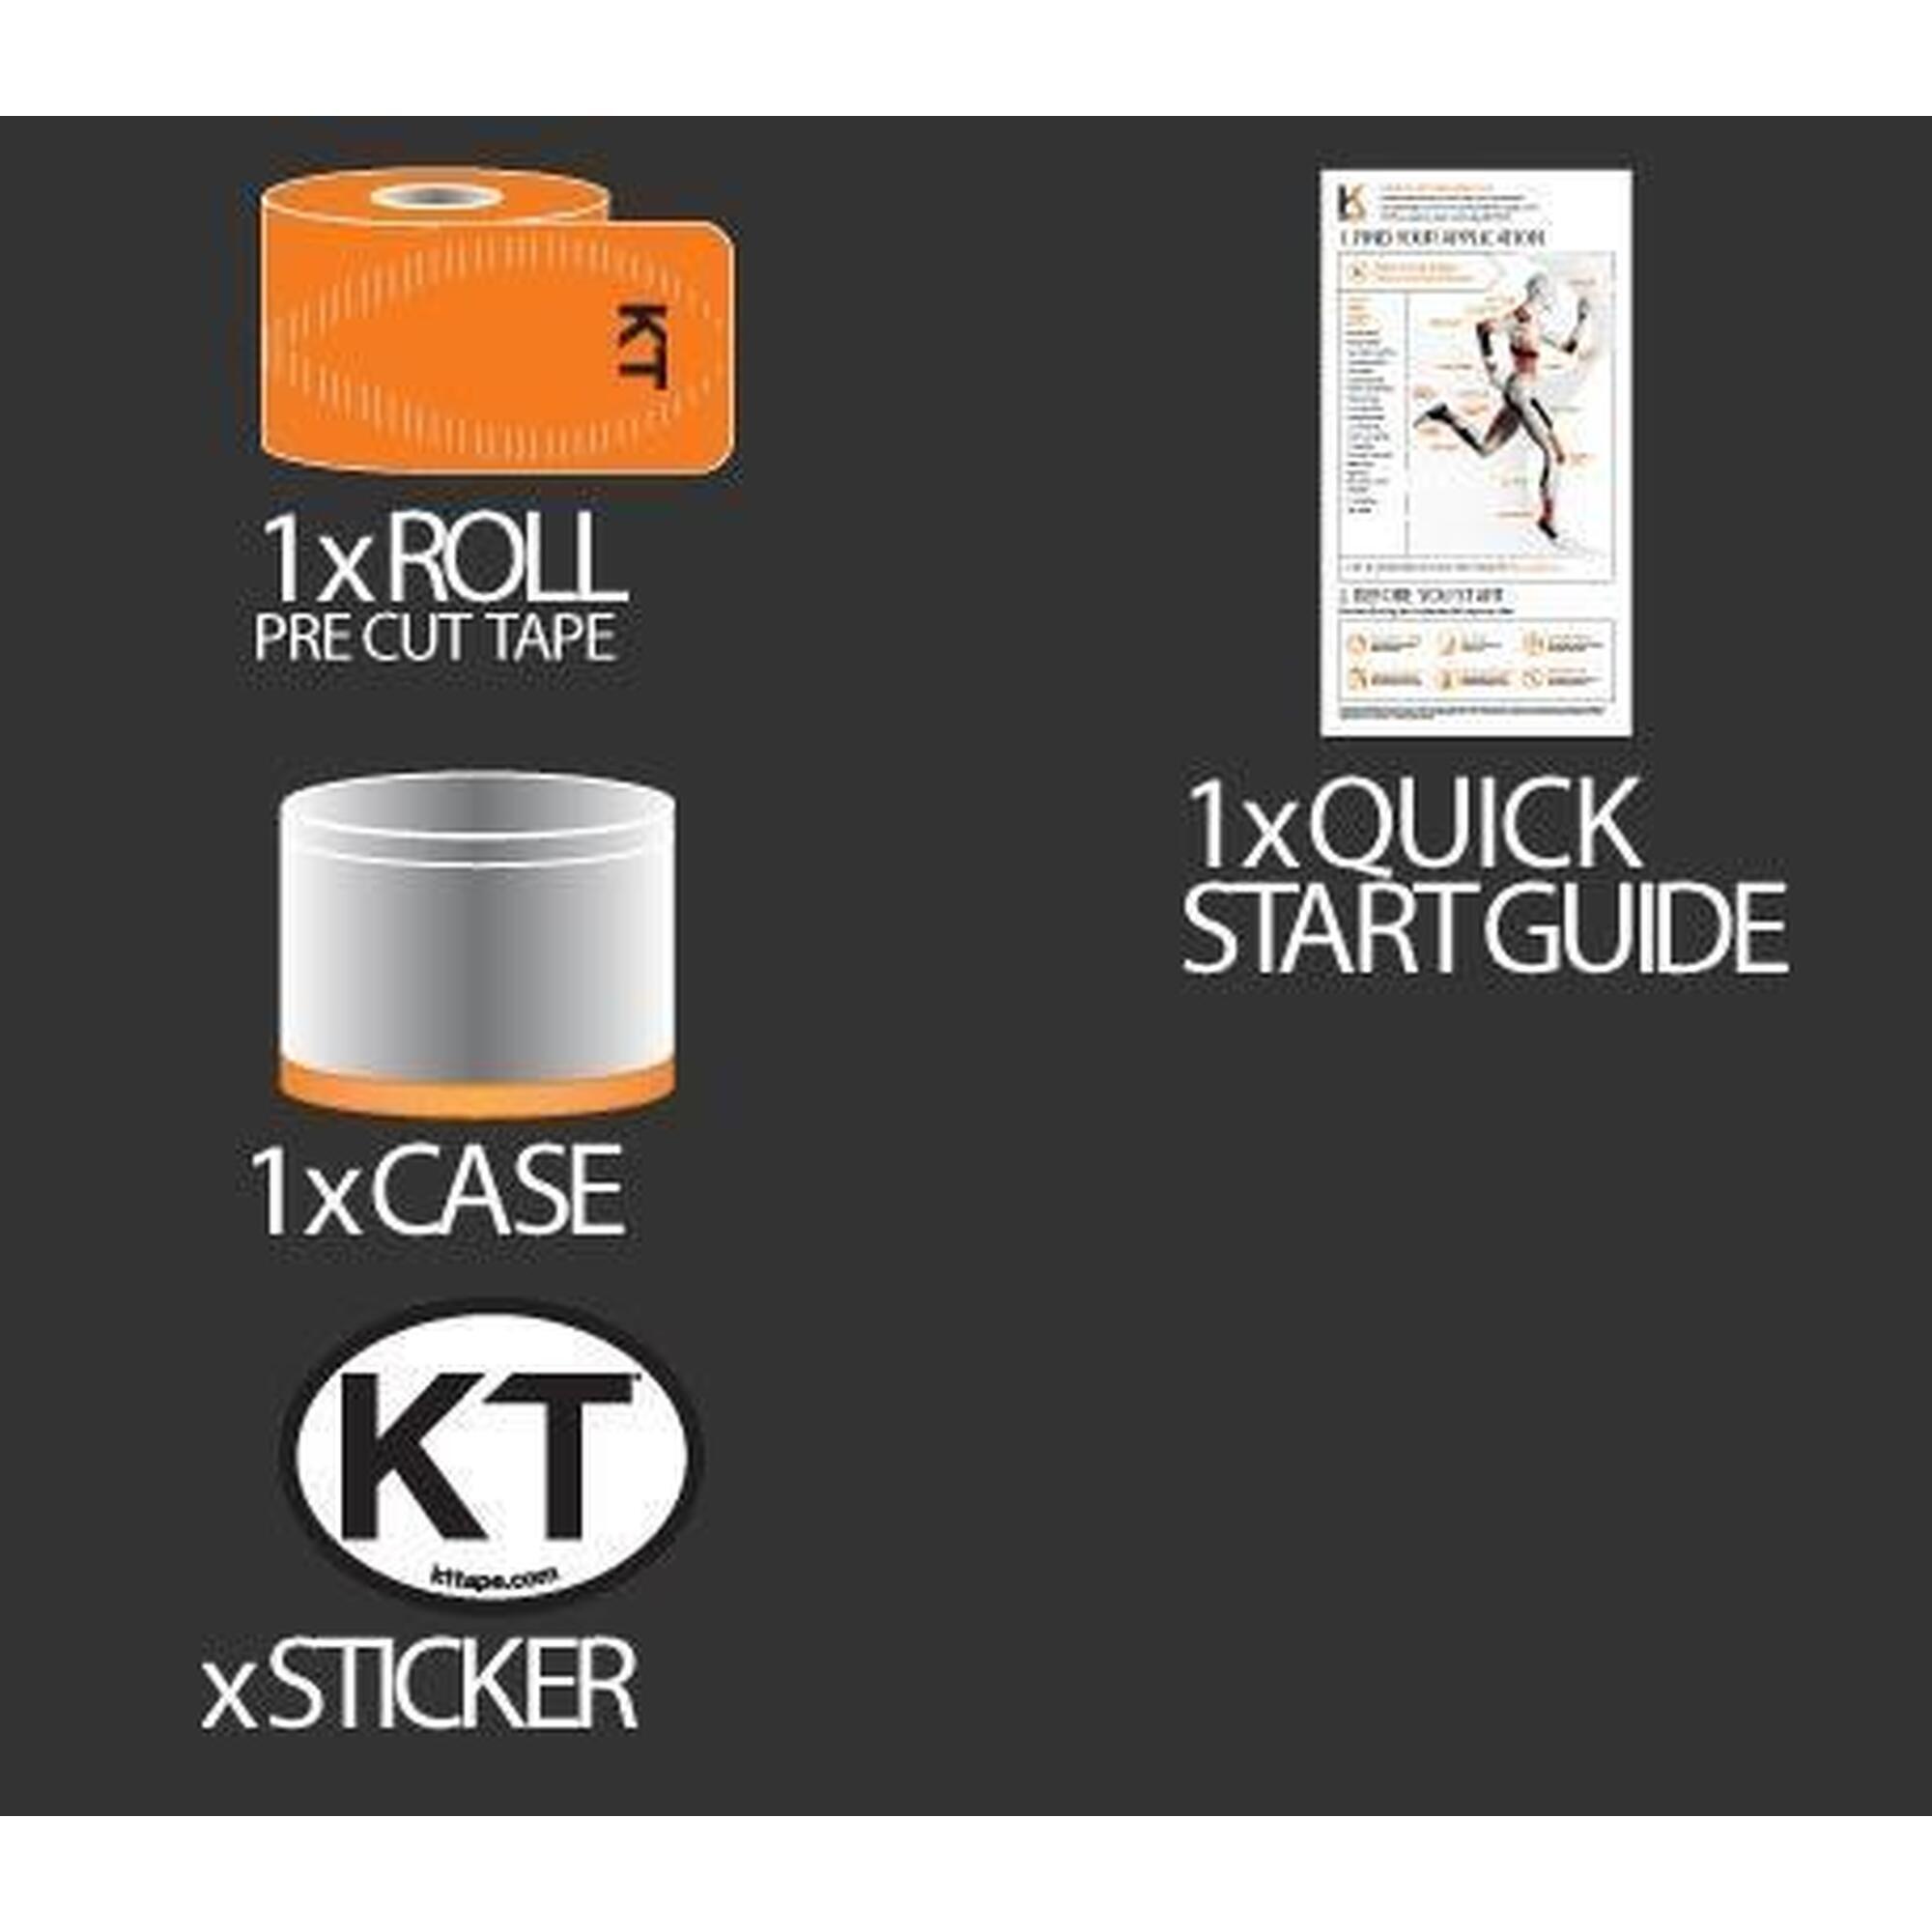 KT Tape Pro - Orange